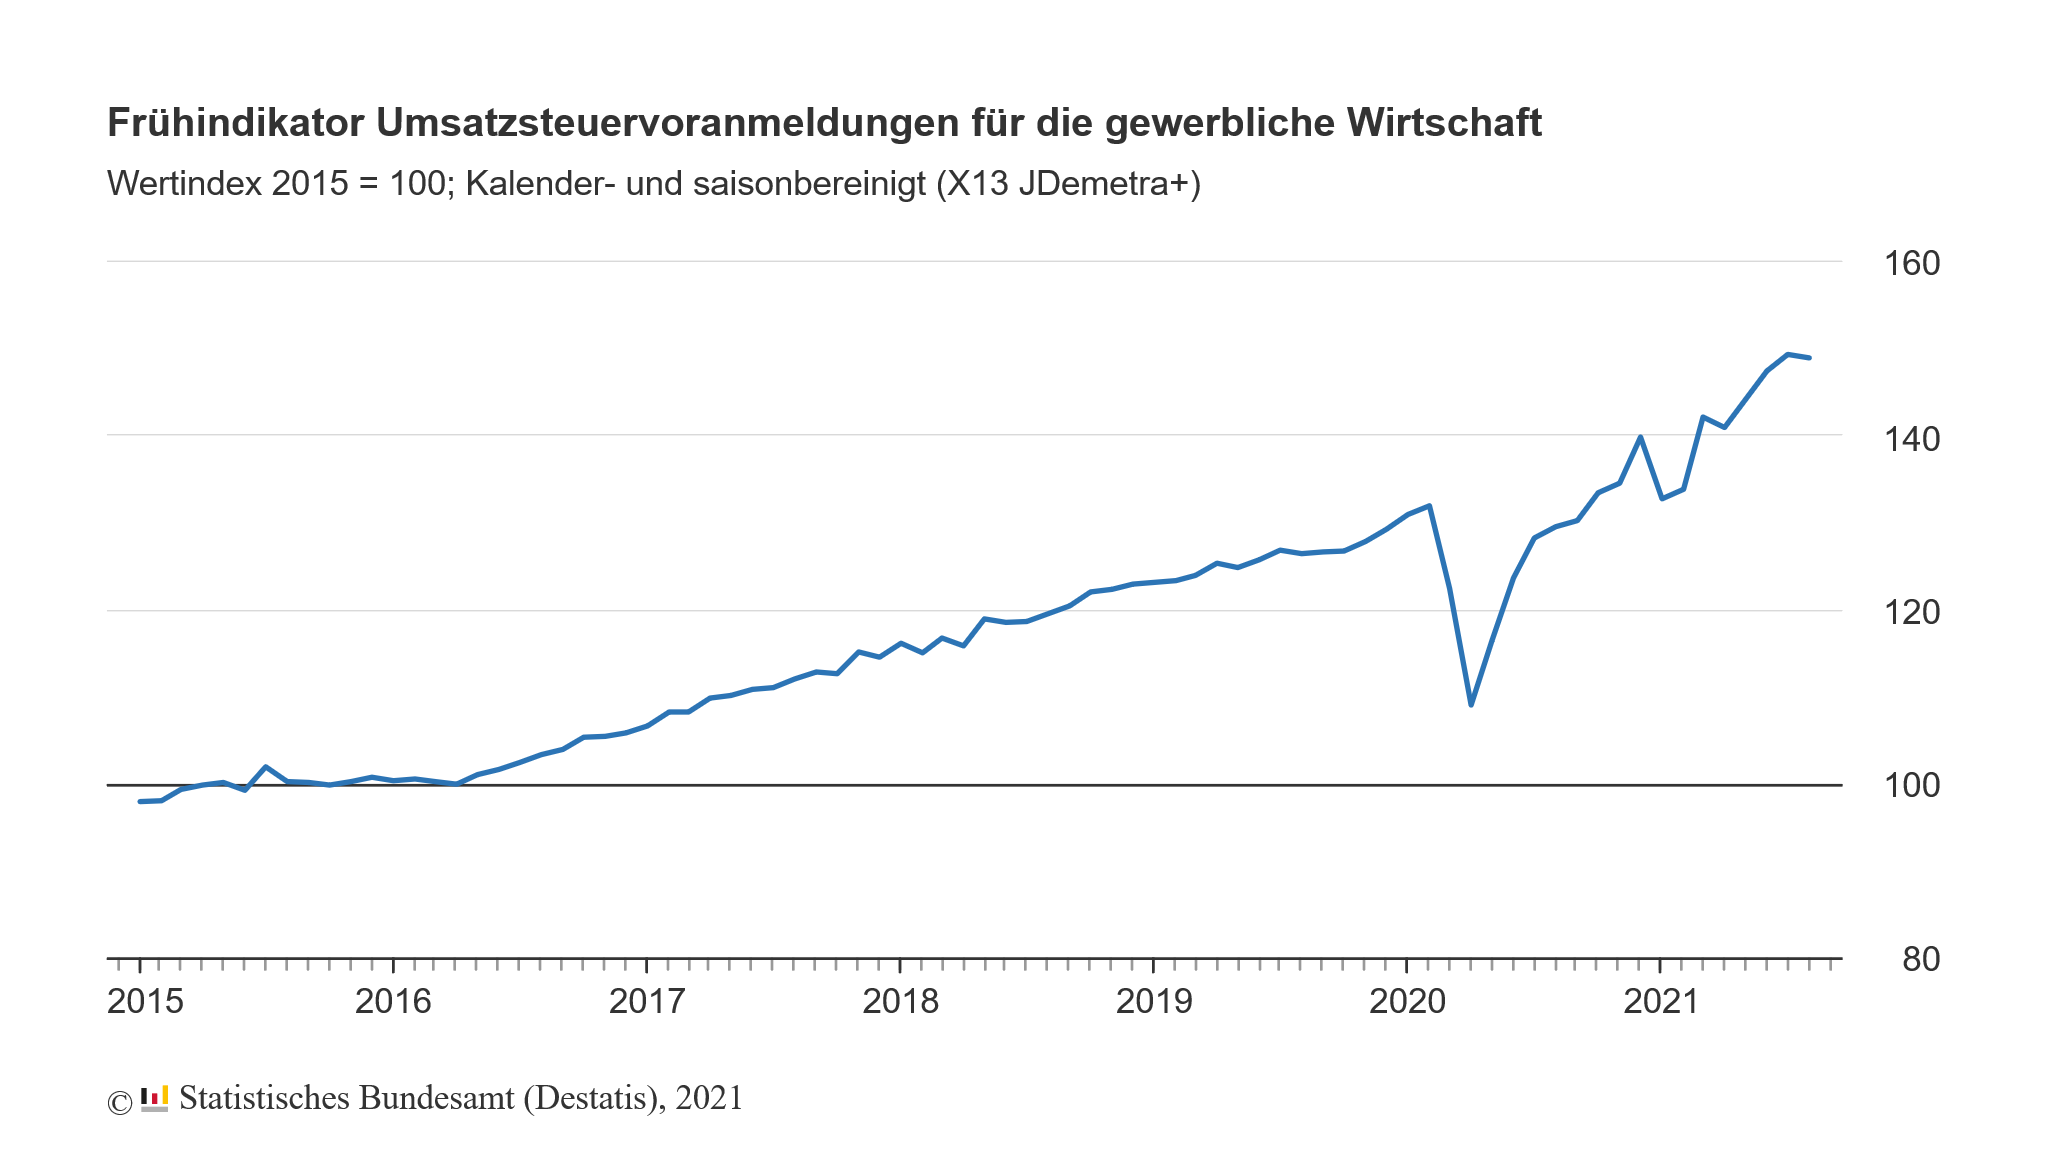 Umsatz der gewerblichen Wirtschaft in Deutschland